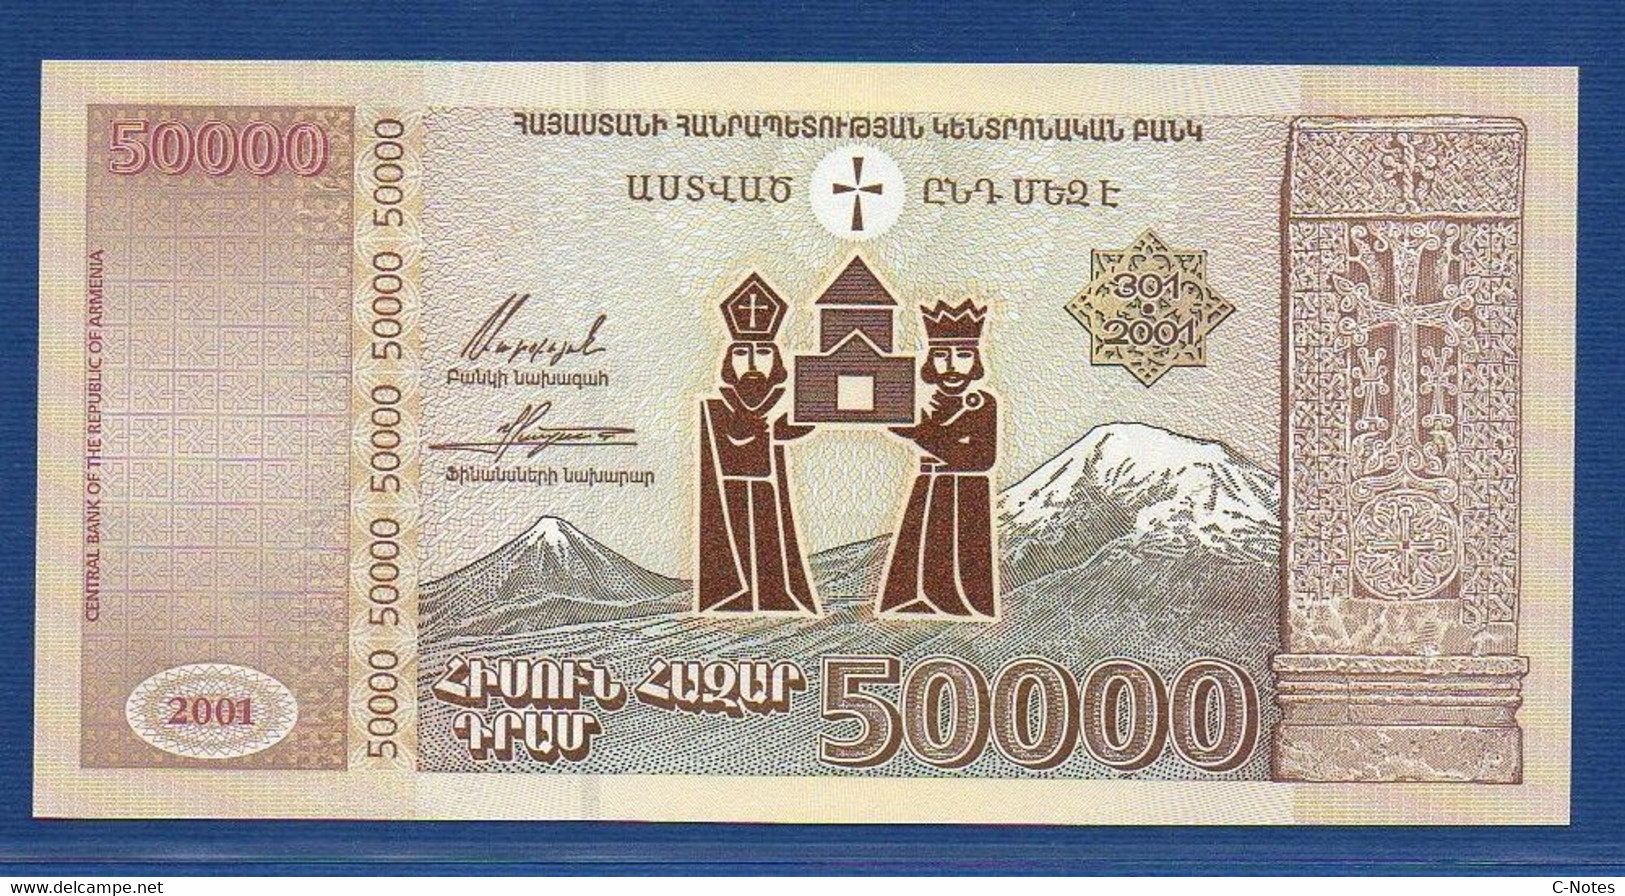 ARMENIA - P.48 – 50.000 50000 Dram 2001 UNC, Serie 1953829 Commemorative Issue - Armenia